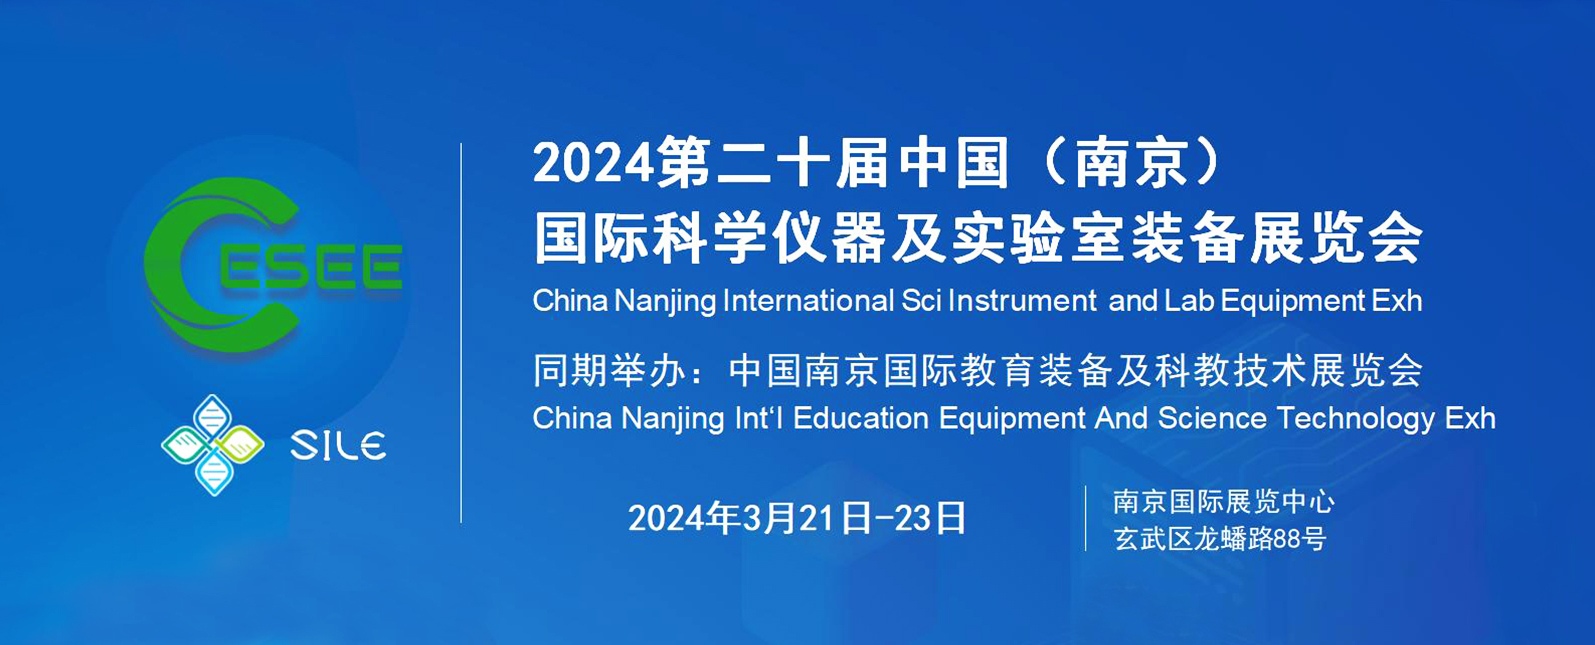 展会资讯丨与您相约2024第二十届南京国际科学仪器及实验室装备展览会